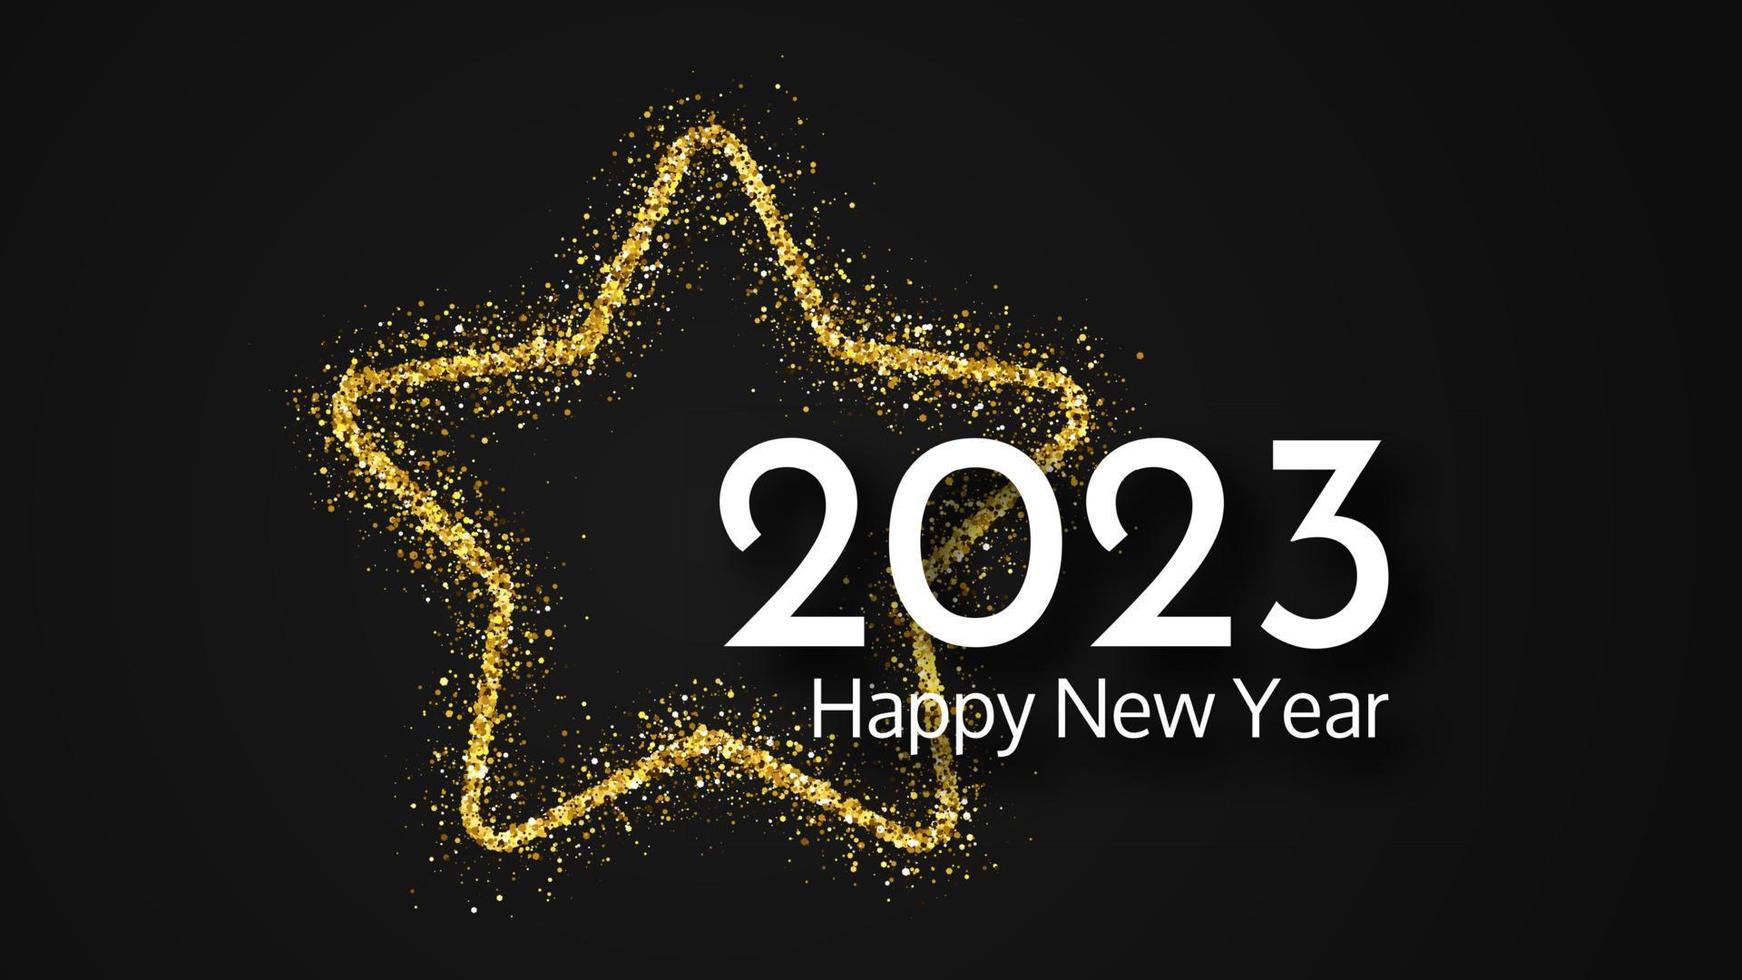 Fondo de feliz año nuevo 2023. inscripción blanca en una estrella dorada brillante para tarjetas de felicitación navideñas, volantes o carteles. ilustración vectorial vector